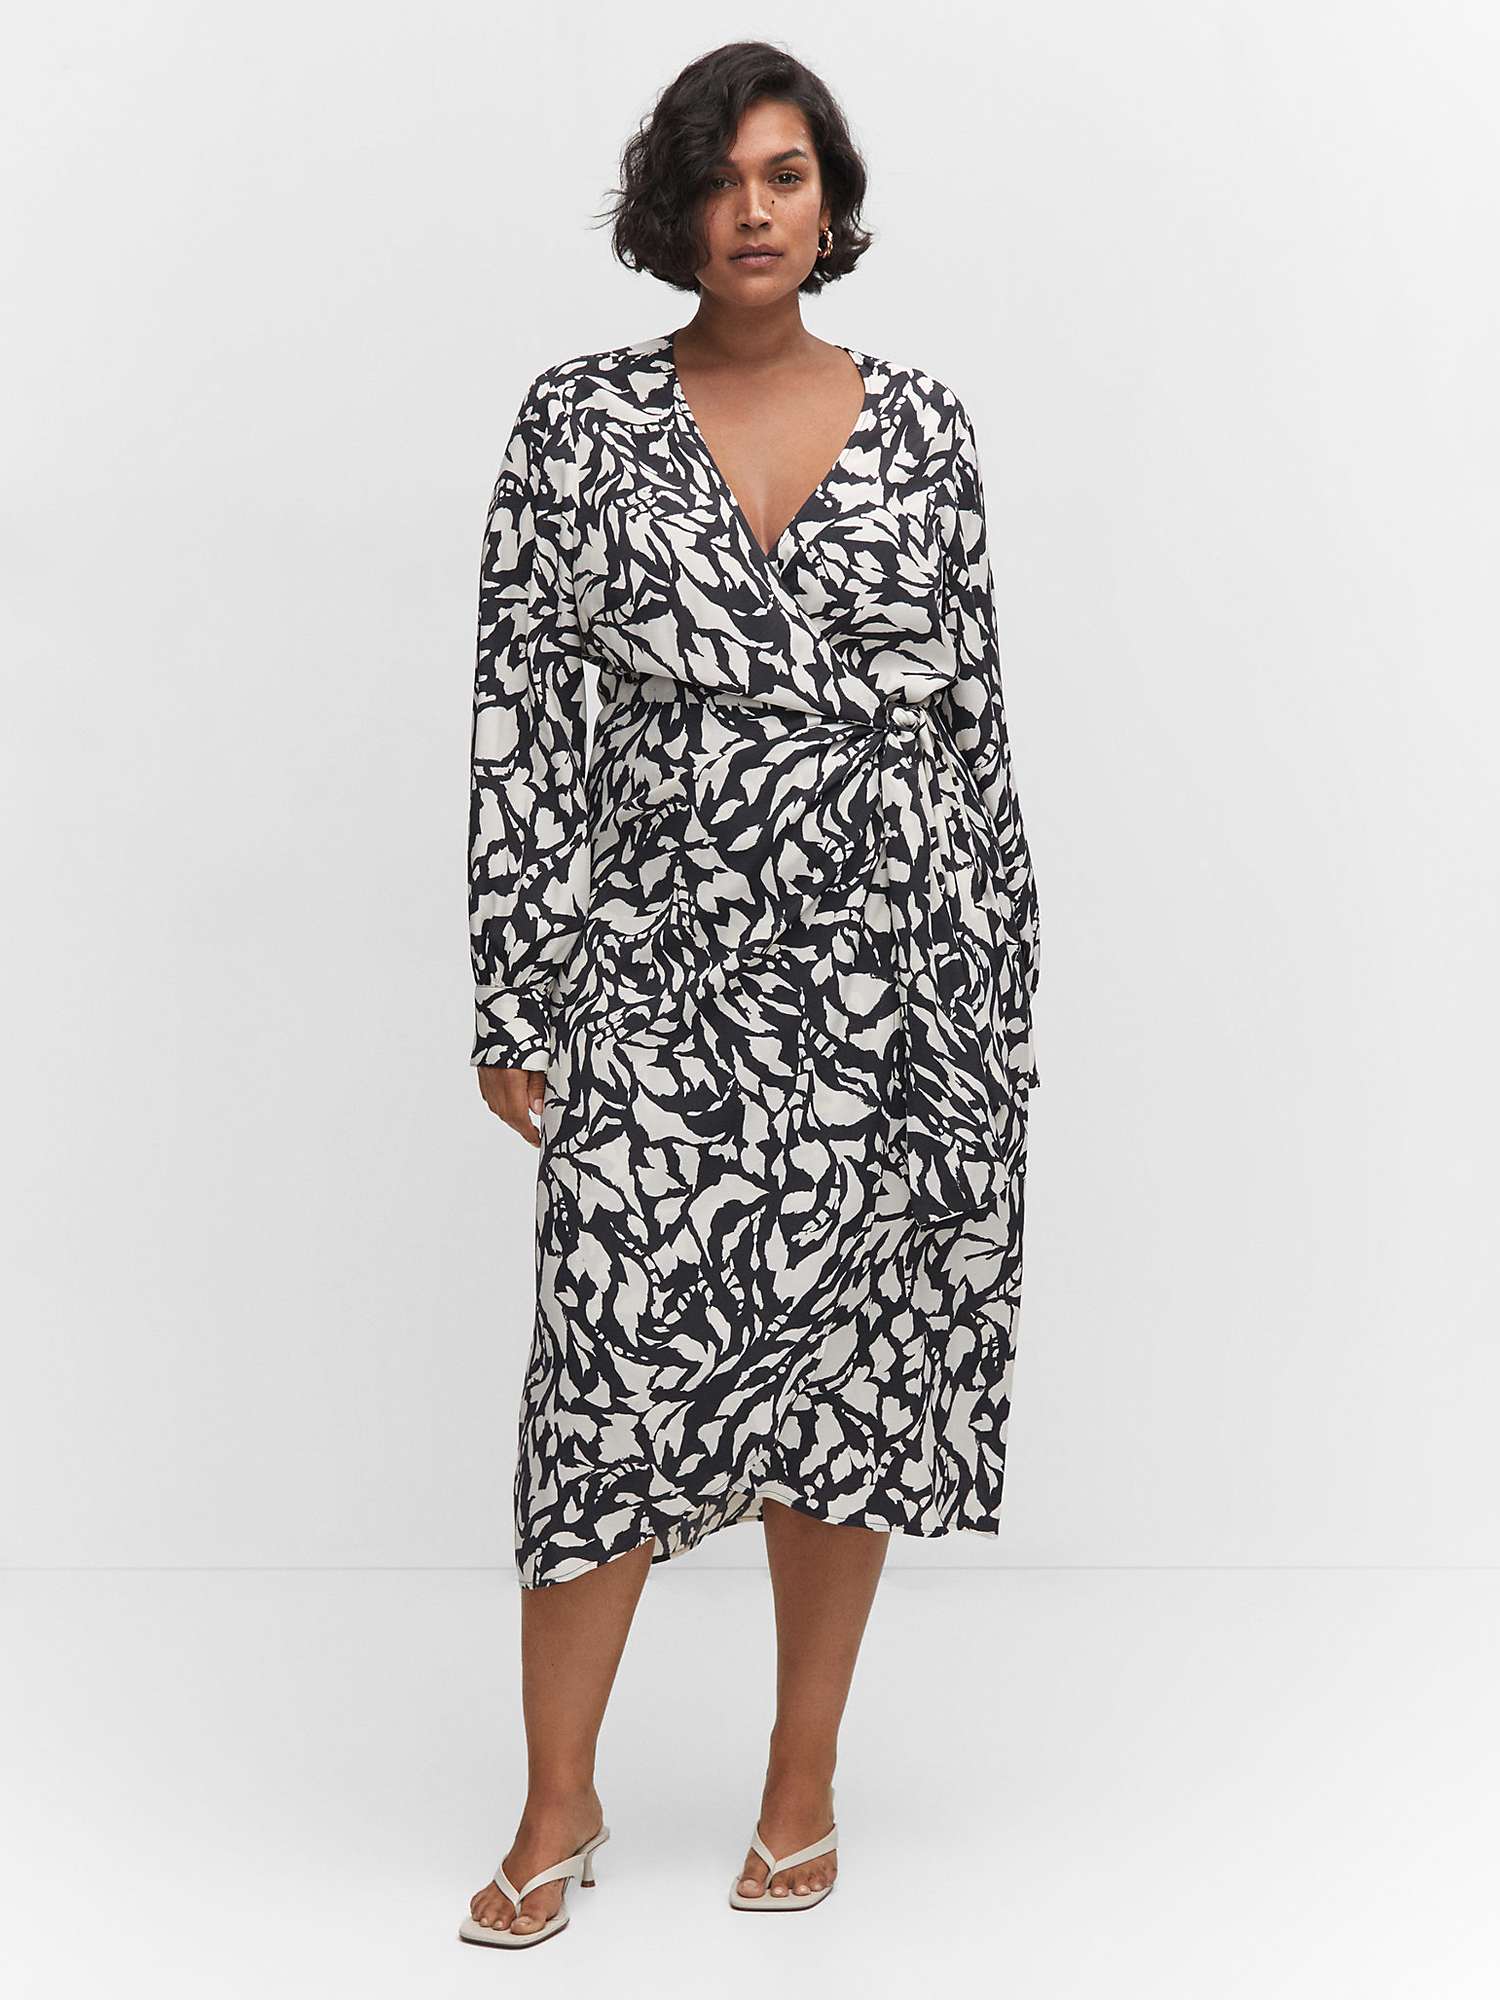 Mango Romina Abstract Print Midi Wrap Dress, Black/White at John Lewis ...